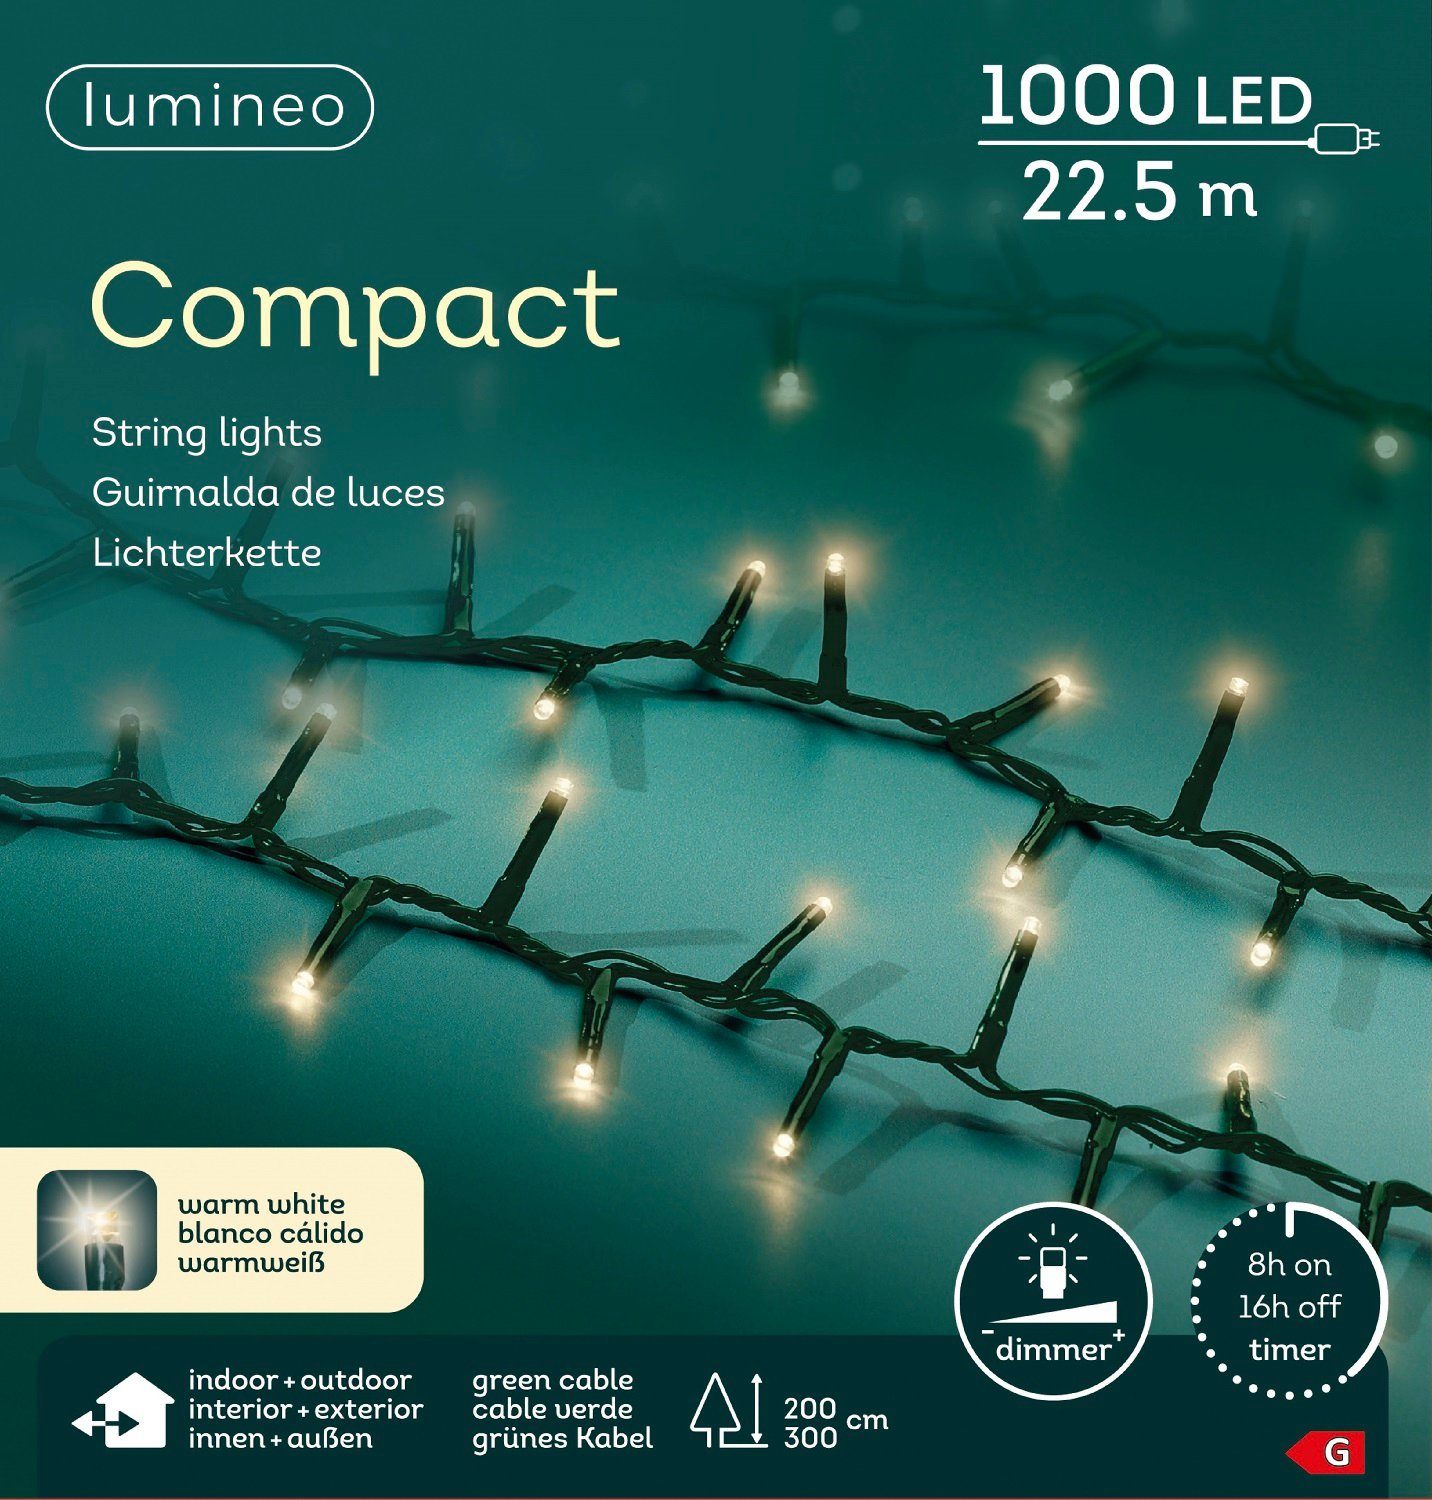 Compact Timer, LED Dimmbar, weiß, Lichterkette grünes Kaemingk Kabel, warm m Lumineo Outdoor 1000 Indoor, LED-Lichterkette Lumineo 22,5